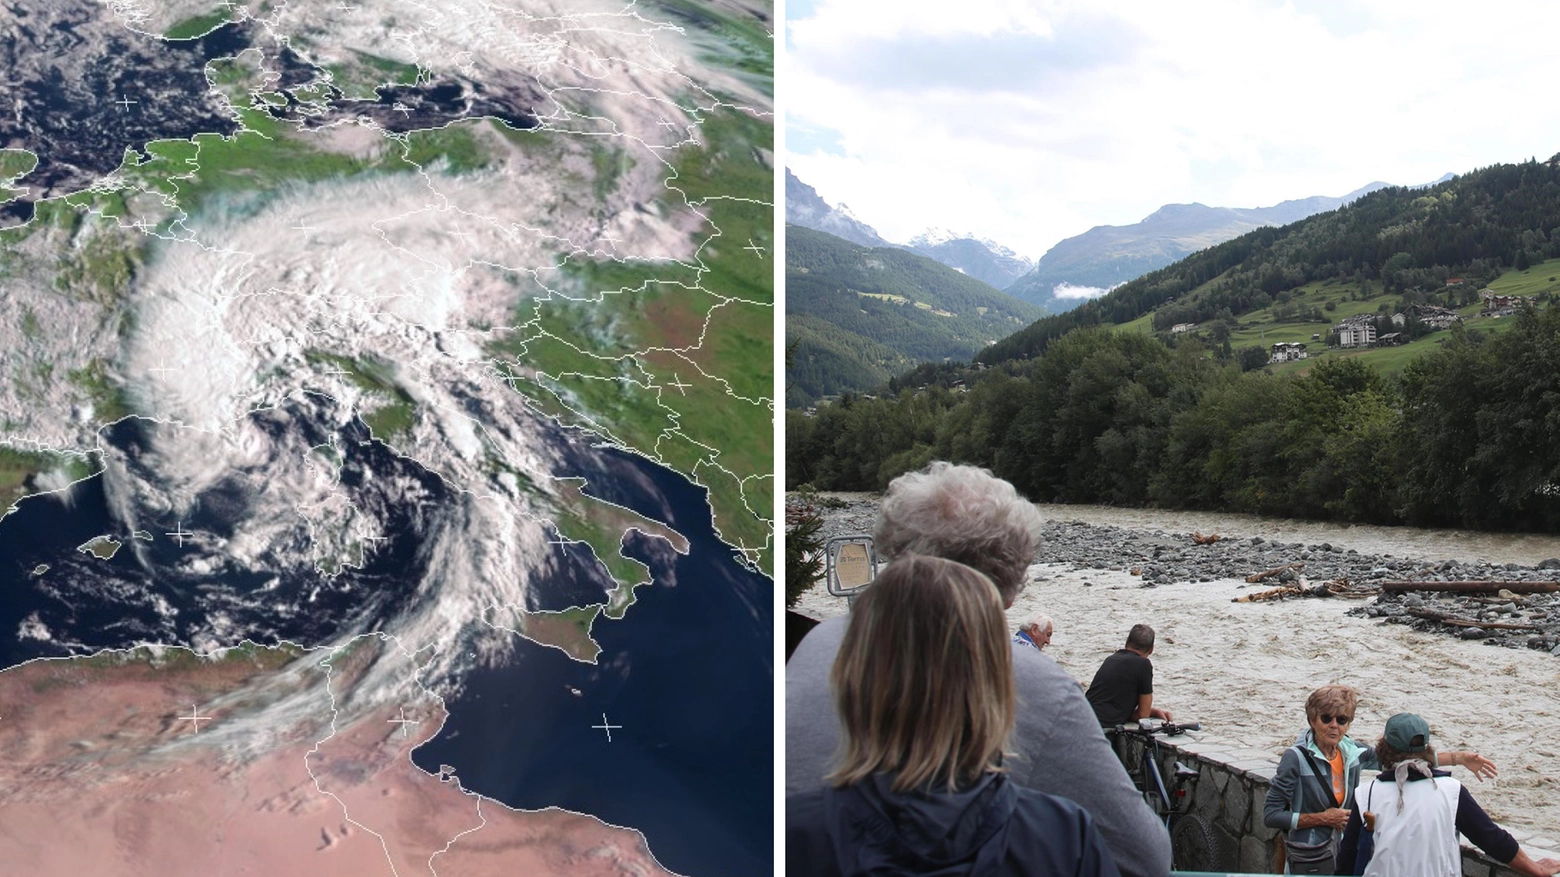 Il ciclone Rea che ha colpito l'Italia negli ultimi giorni e, a destra, l'ingrossamento del fiume Adda